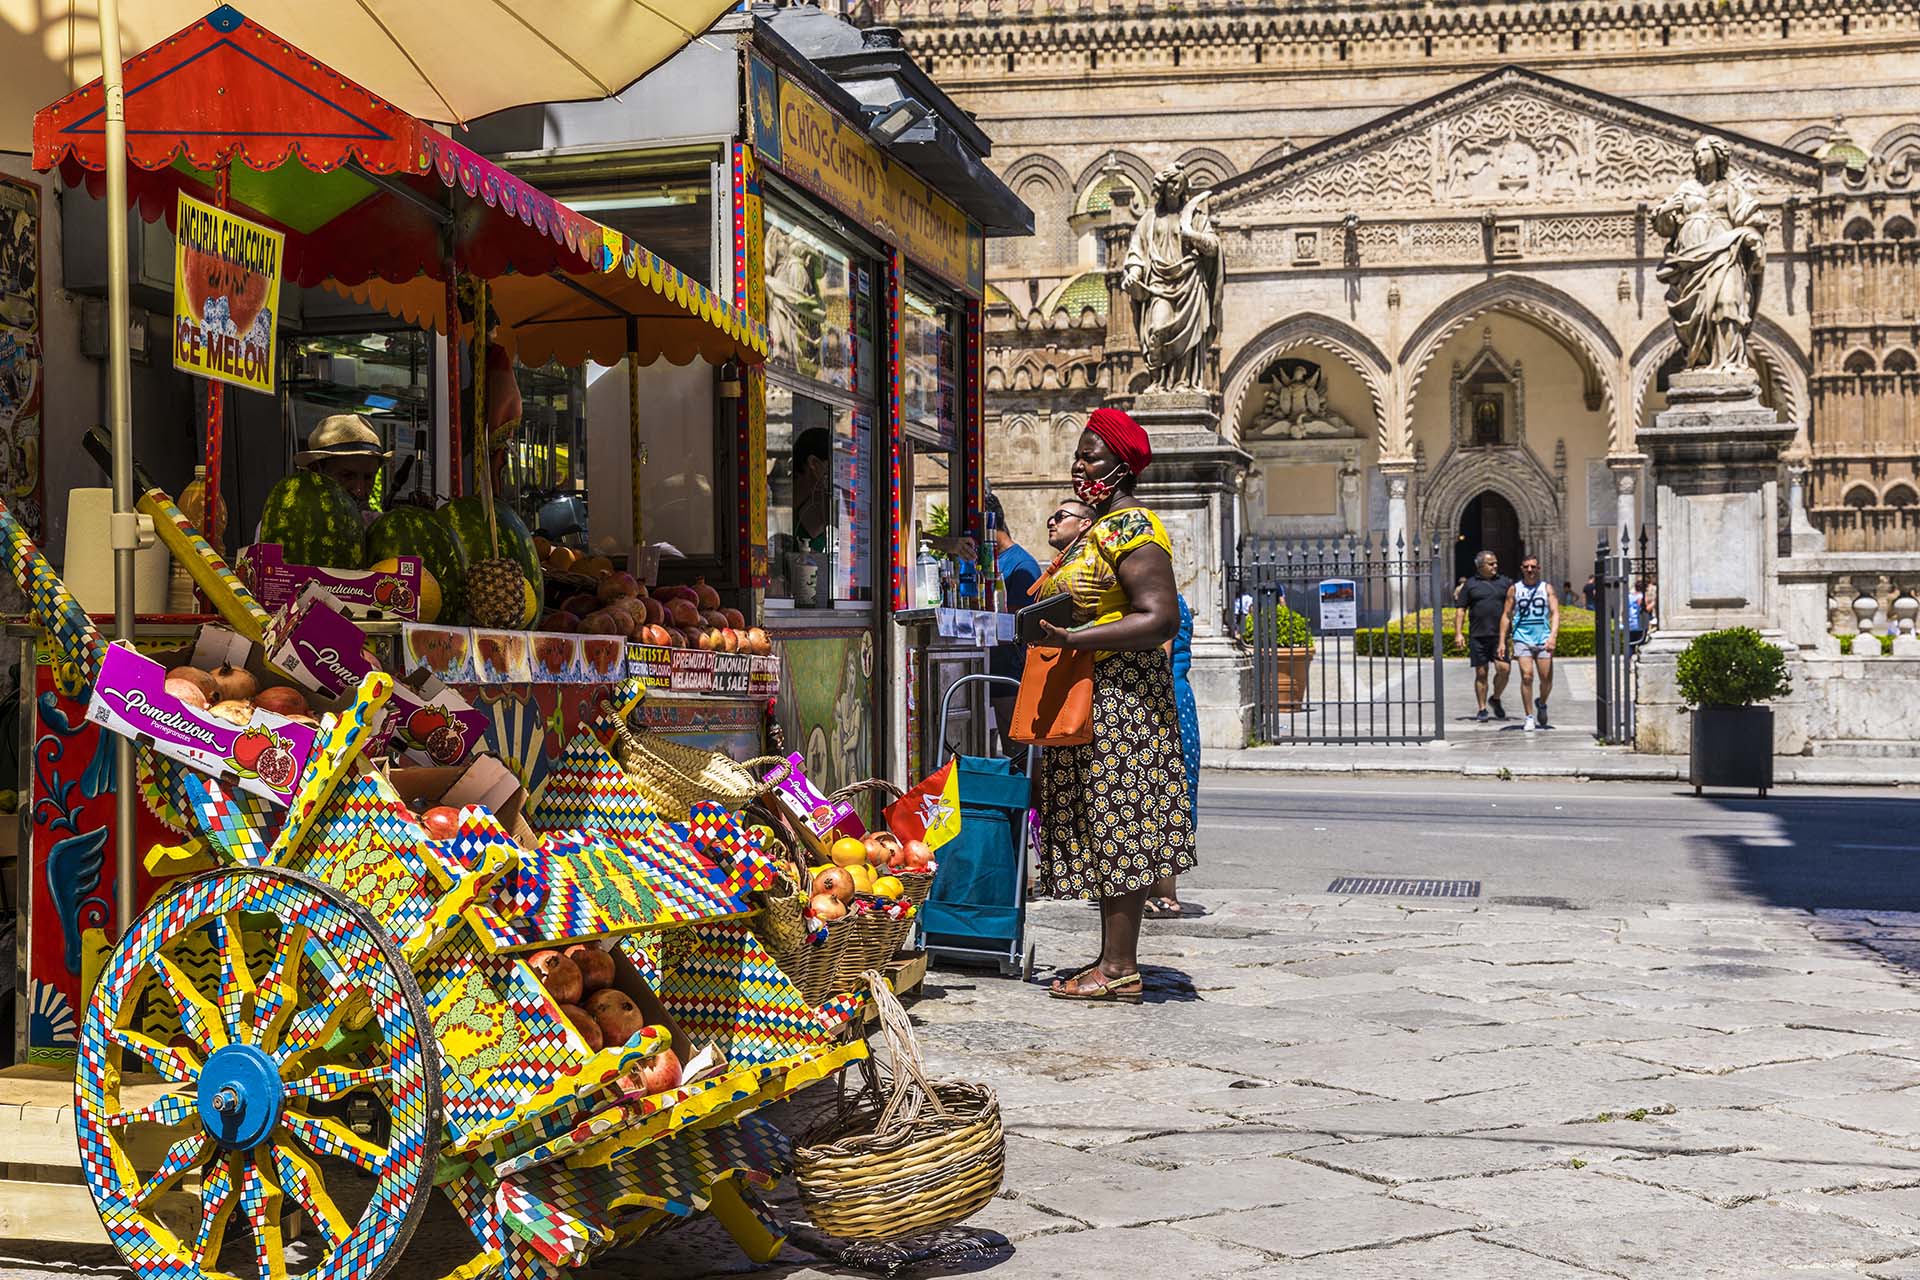 Il chioschetto colorato di fronte l'ingresso del Duomo di Palermo